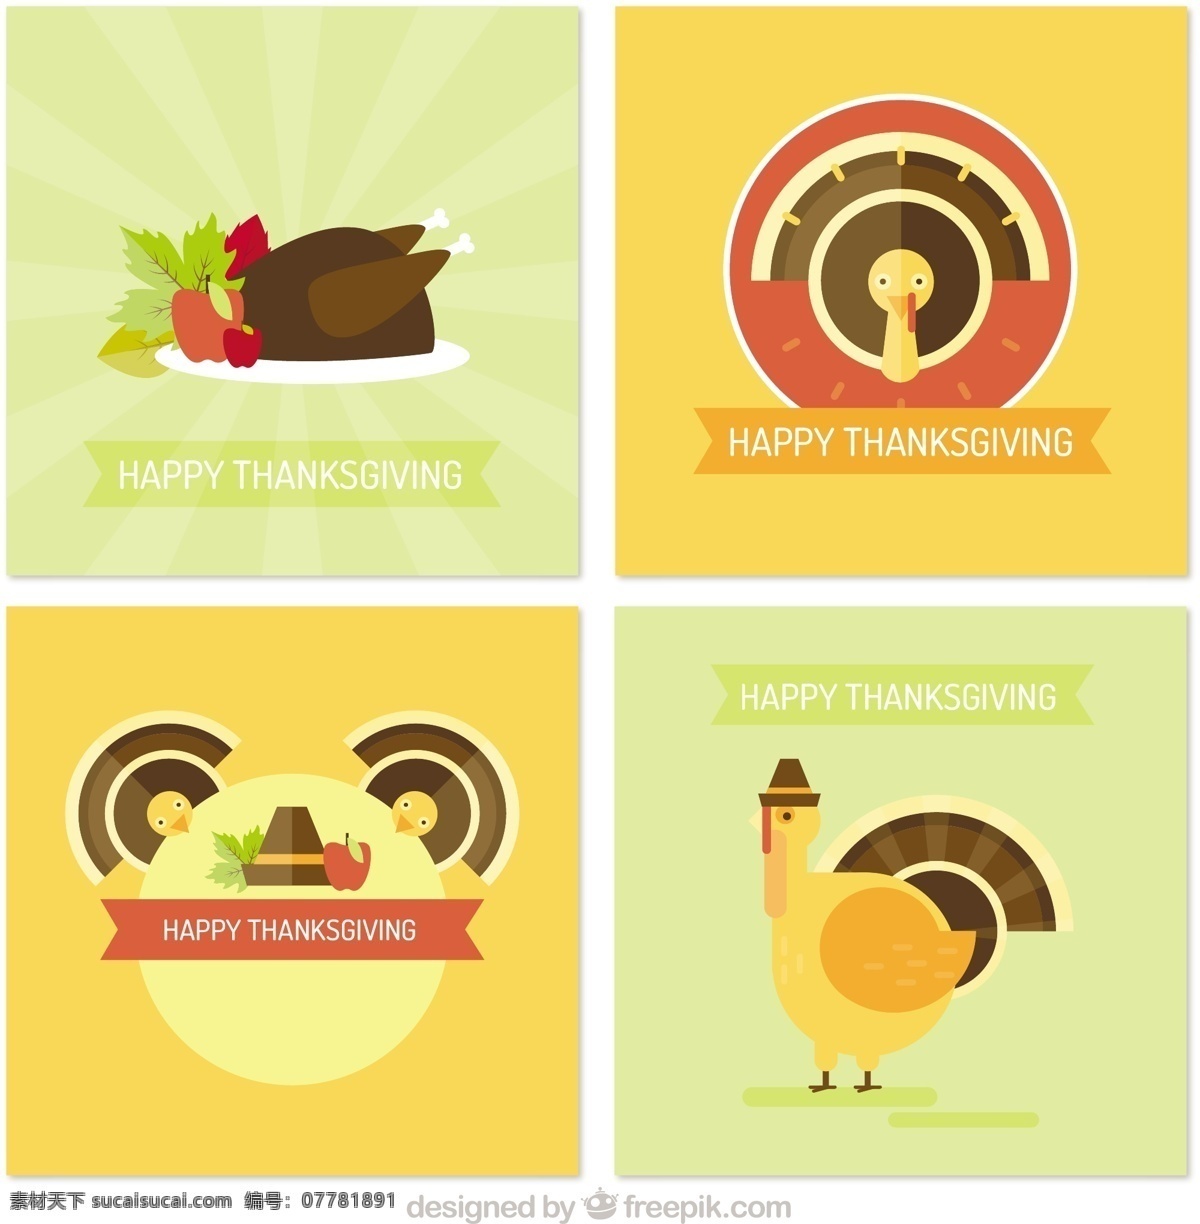 感恩节 火鸡 平 板卡 食品 卡片 家庭 几何 模板 秋季 颜色 平板 庆典 节日 平面设计 晚餐 庆祝 感谢 问候 一天